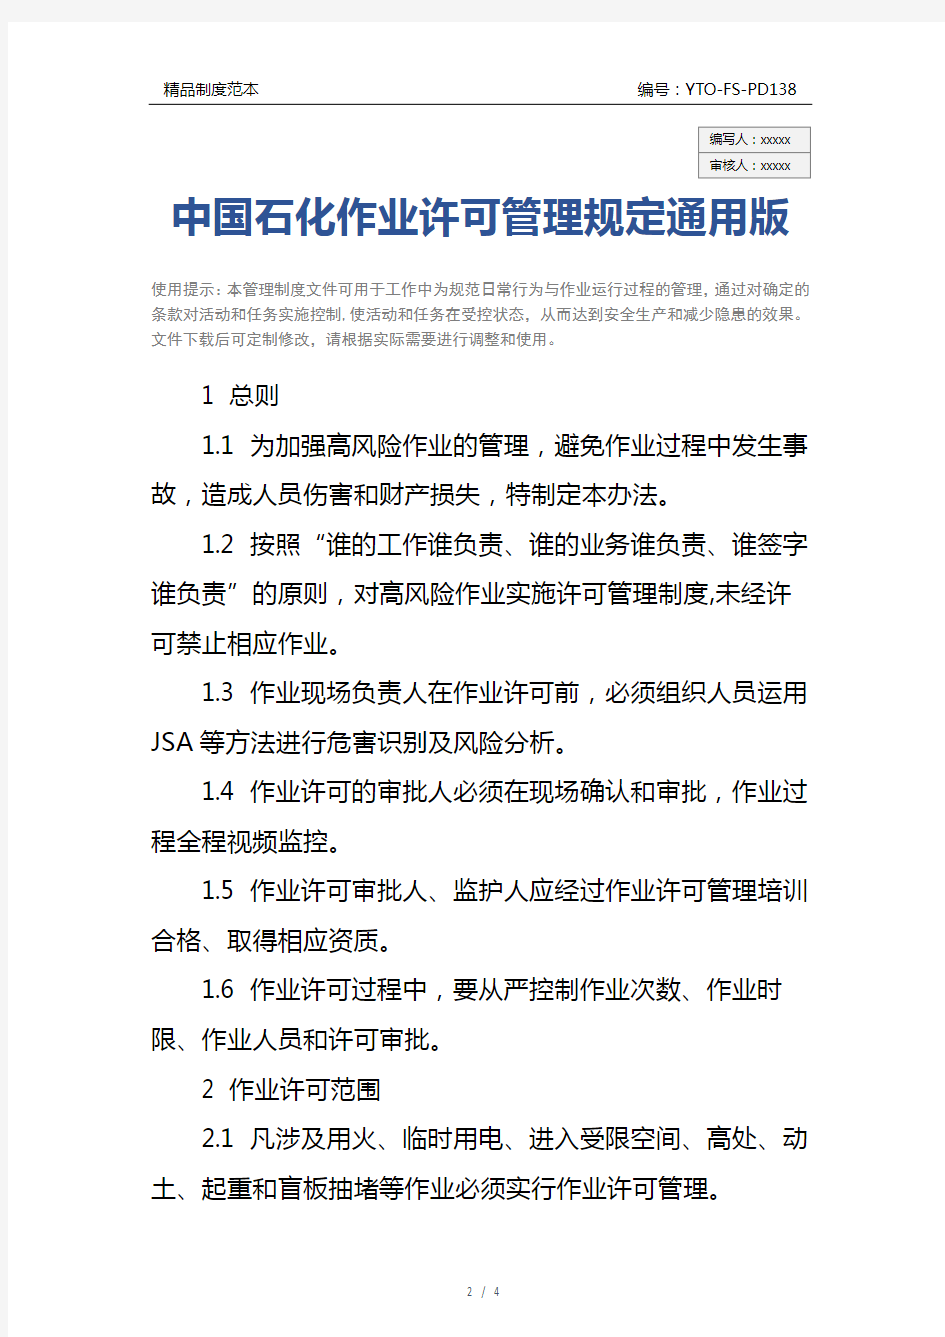 中国石化作业许可管理规定通用版